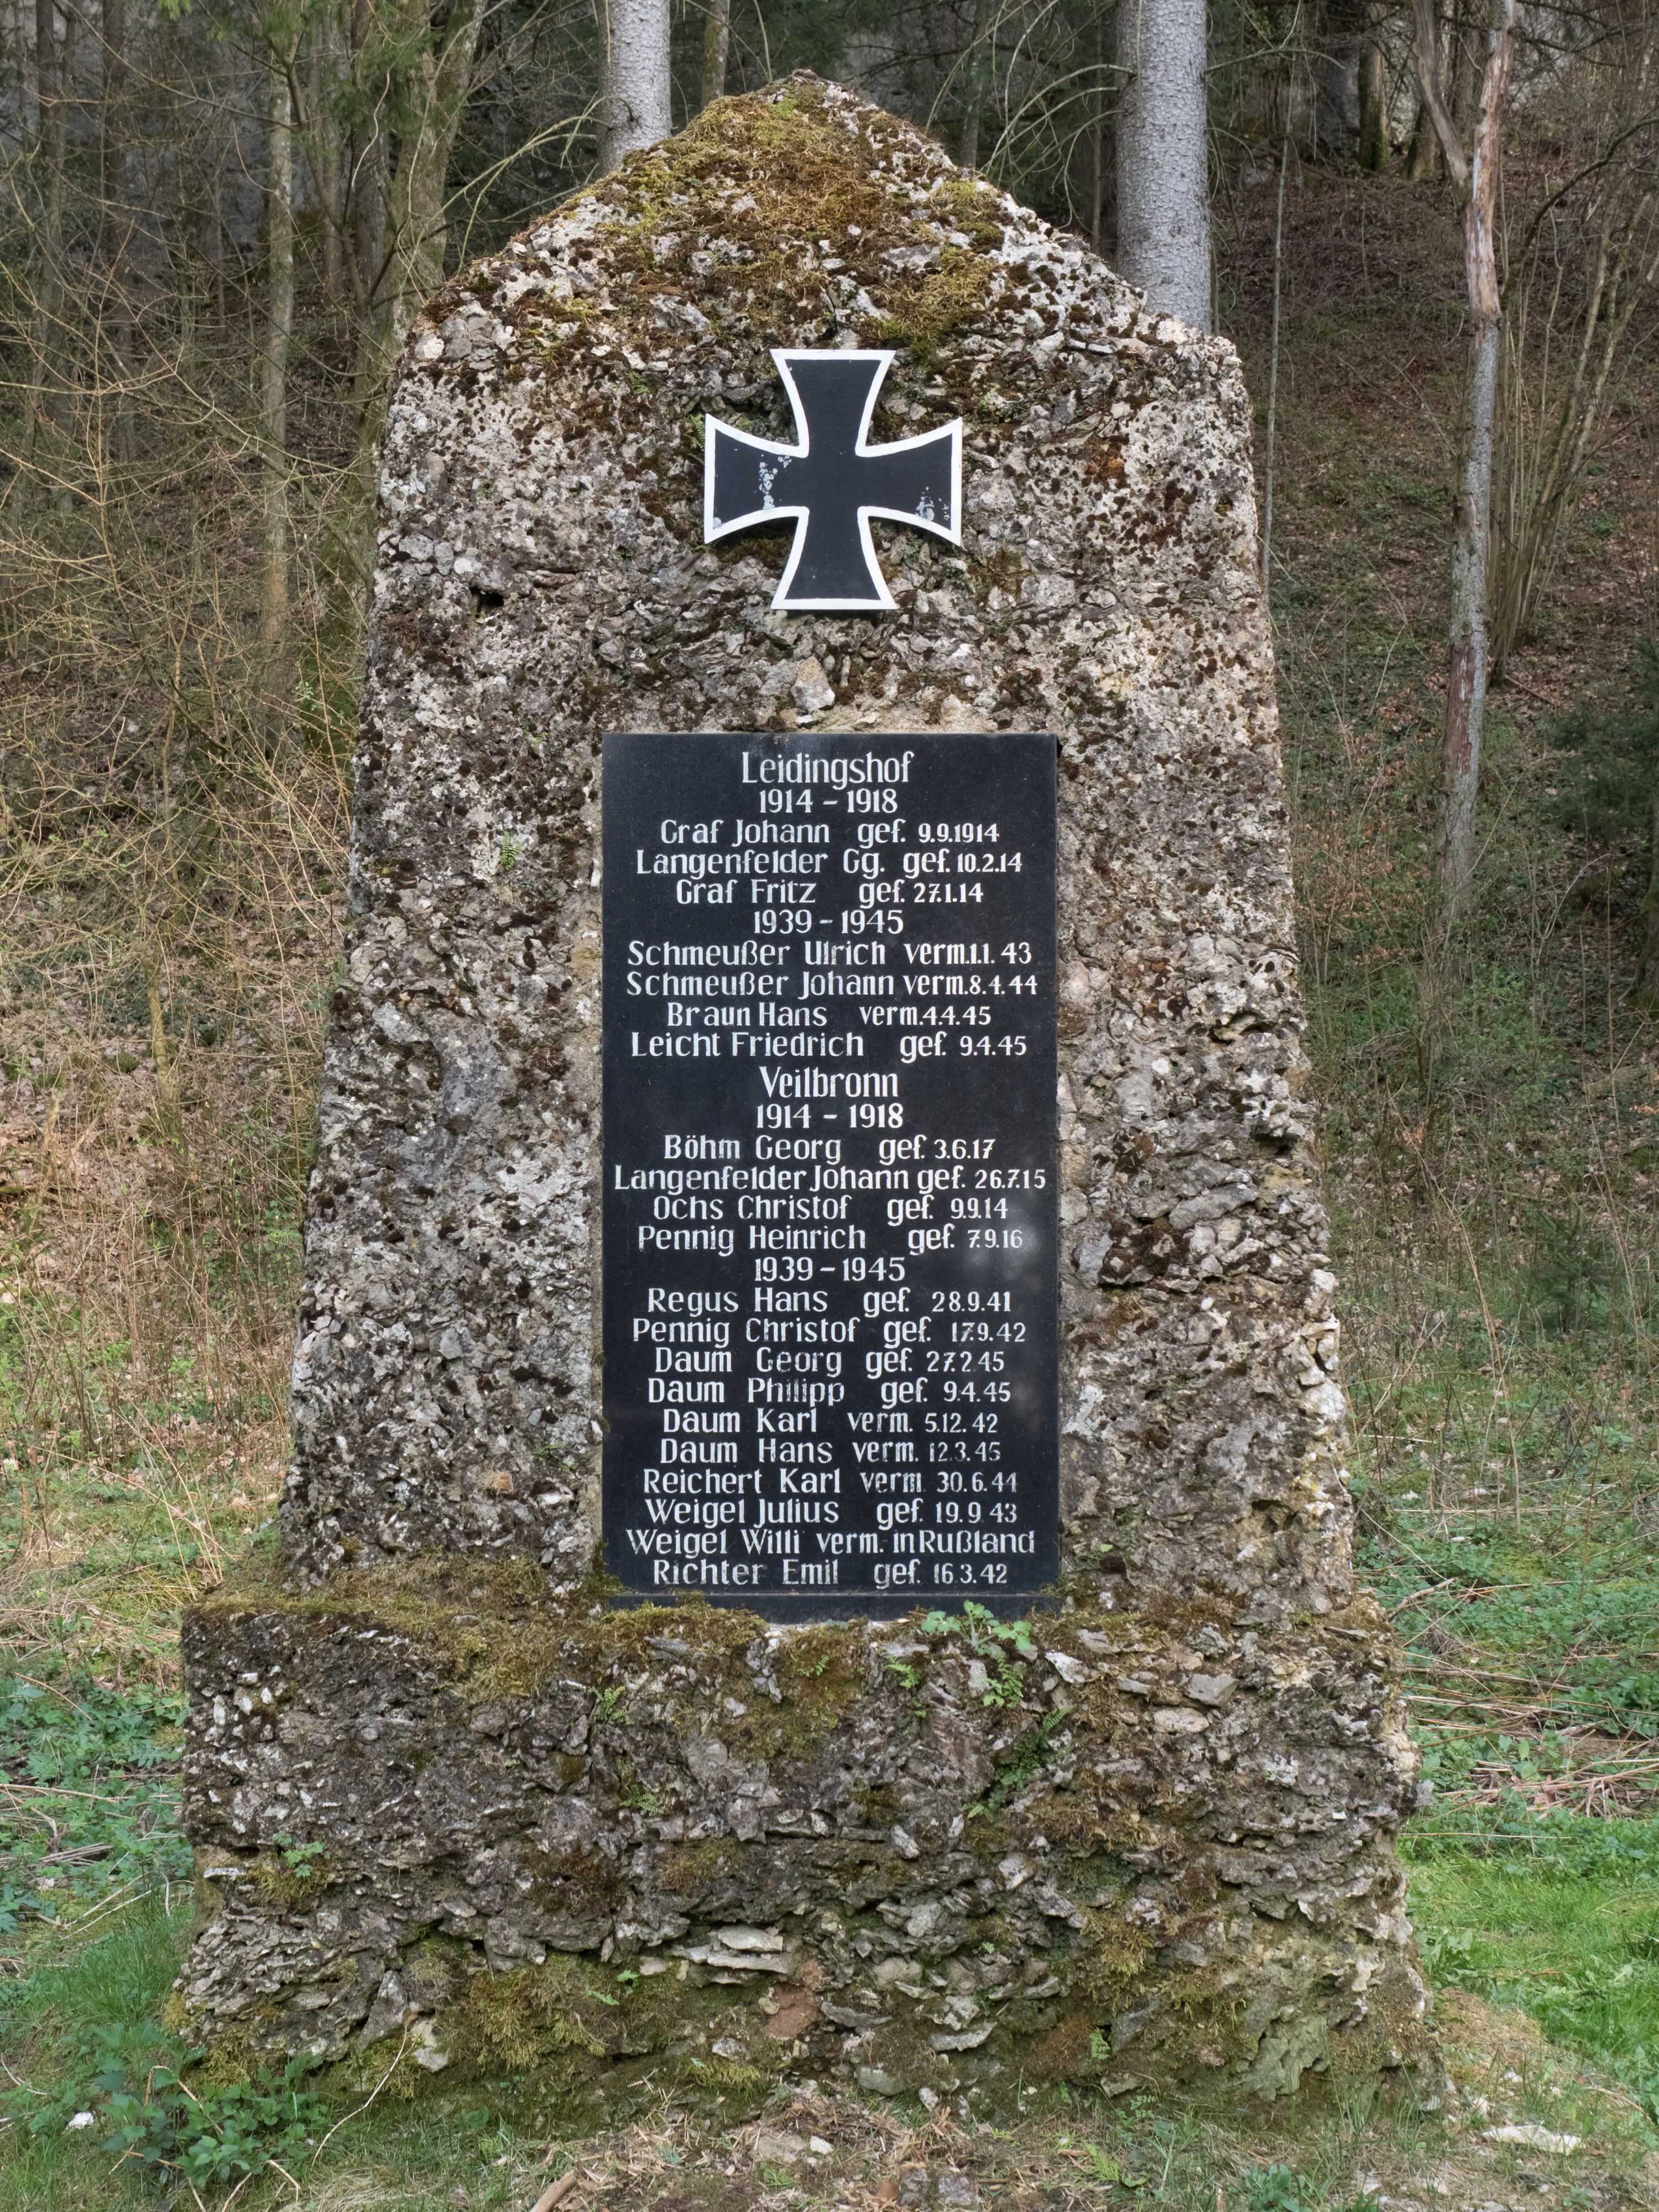 Leidingshofer Tal war memorial P4RM2378